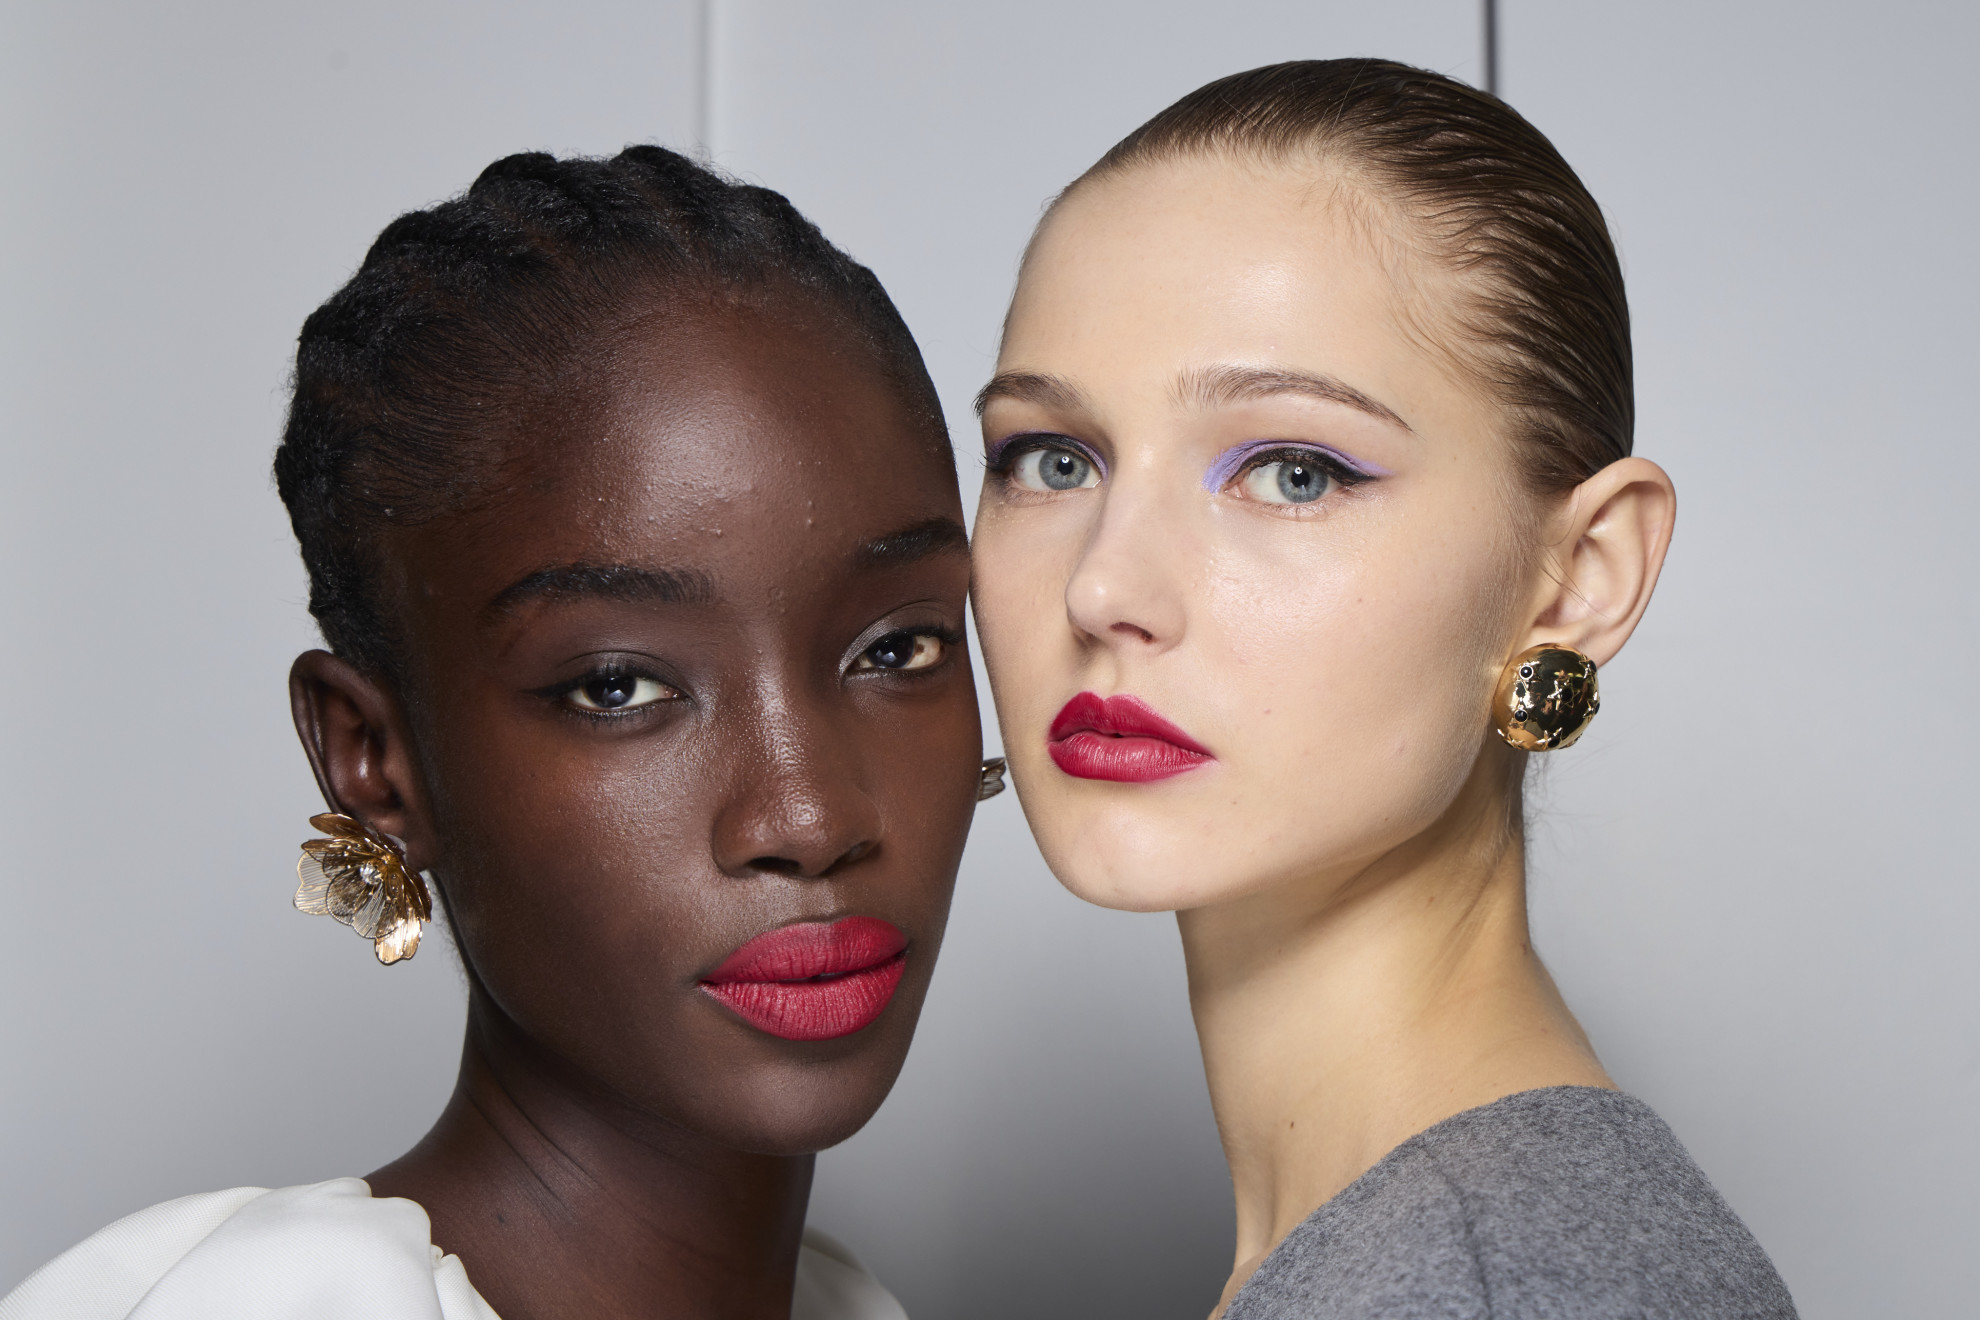 Κόκκινο κραγιόν και σκοτεινά μάτια τα 2 beauty trends που είδαμε στην Εβδομάδα Μόδας της Ν. Υόρκης